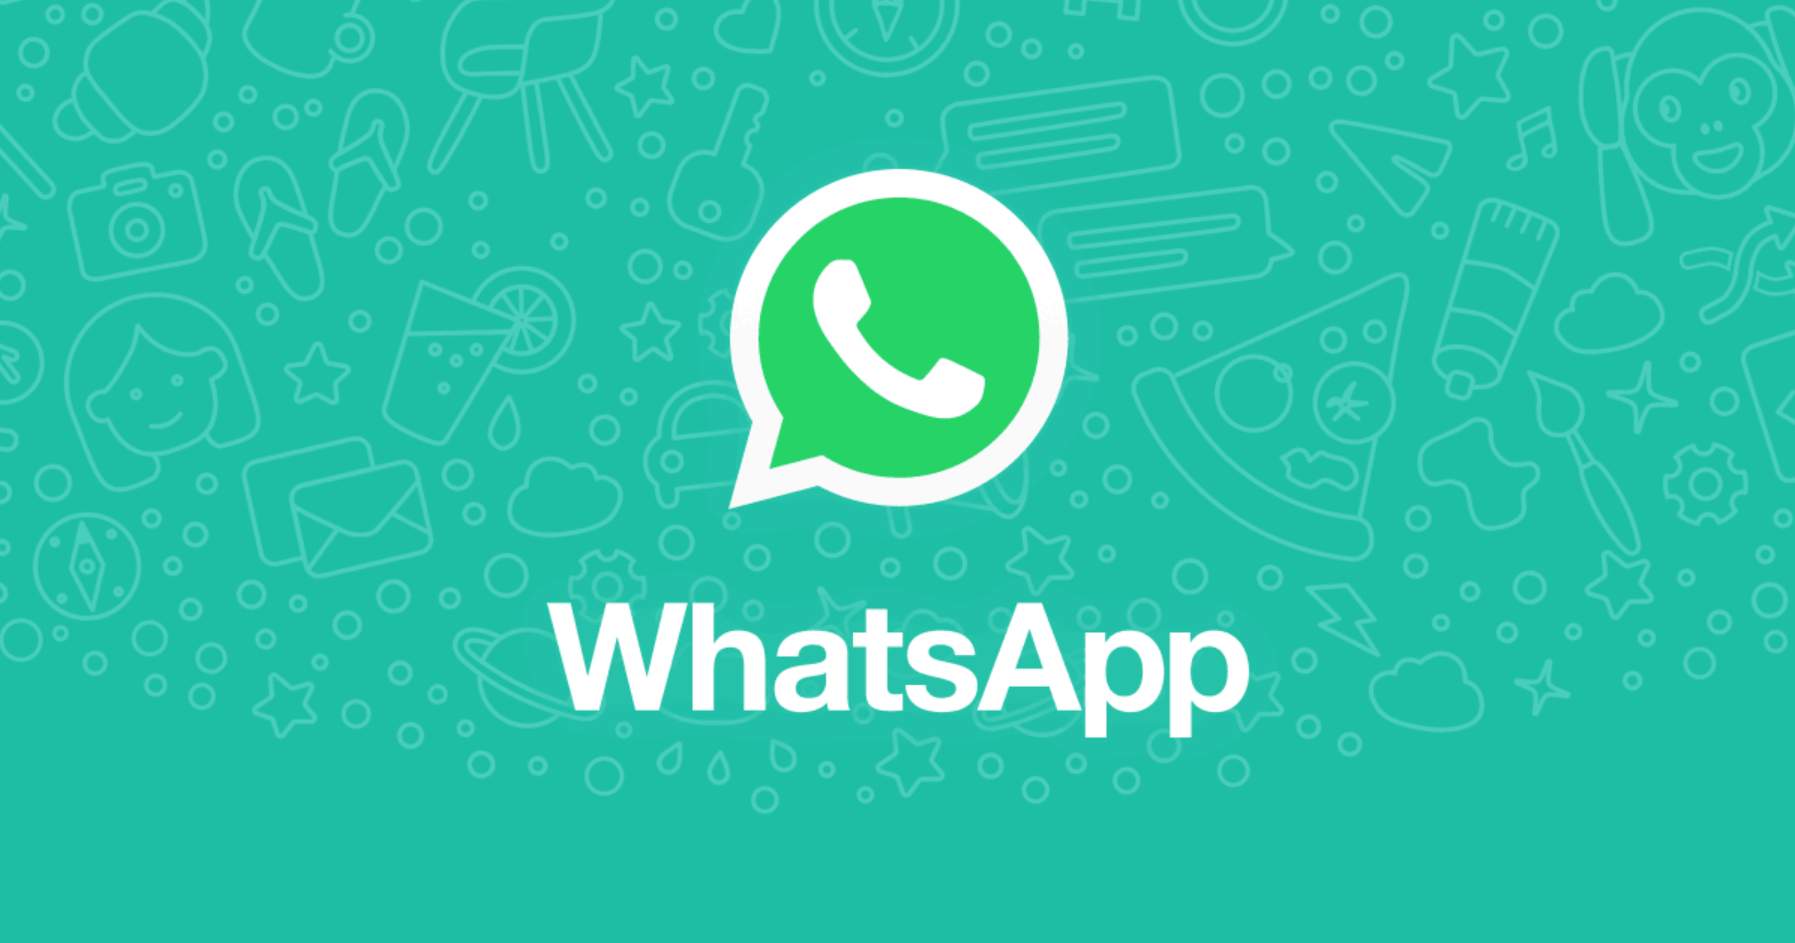 Não precisa depender do celular; WhatsApp ganha aplicativo independente no Windows